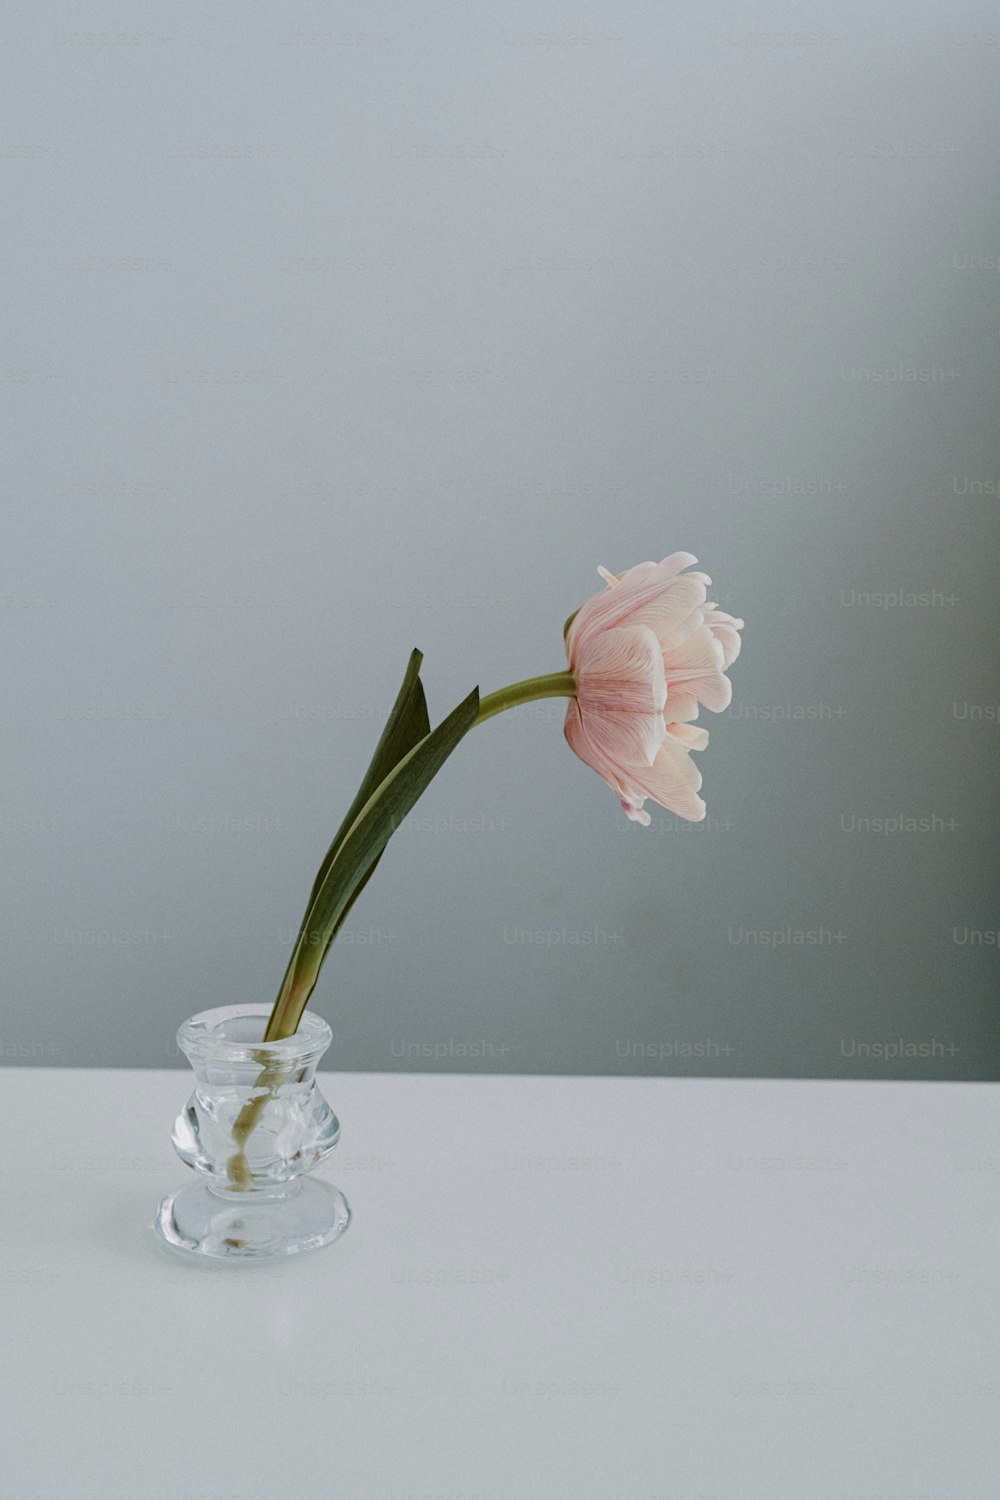 Una sola flor rosa en un jarrón transparente